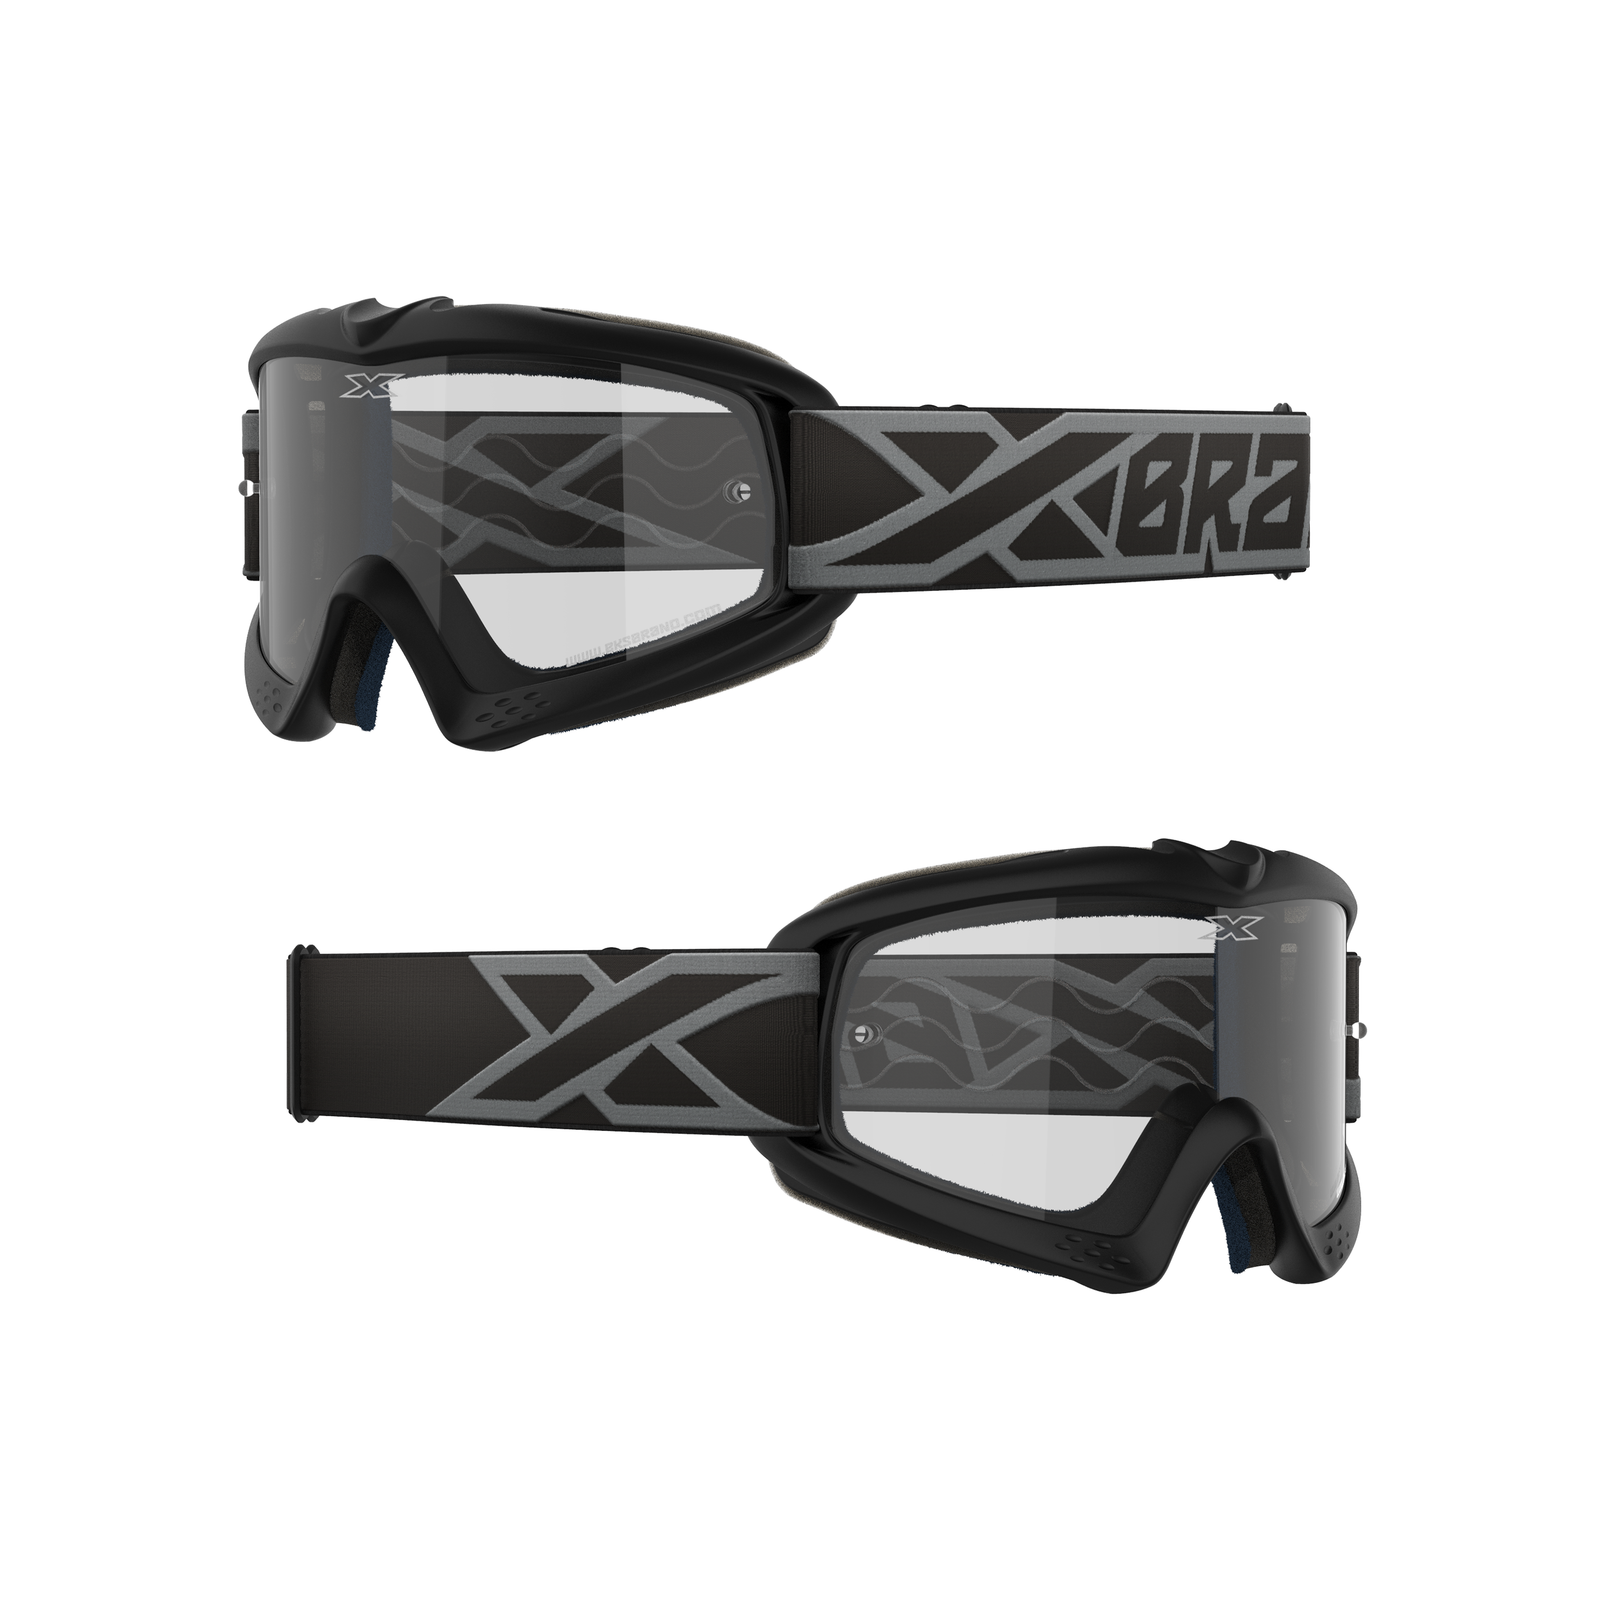 EKS Brand Goggles